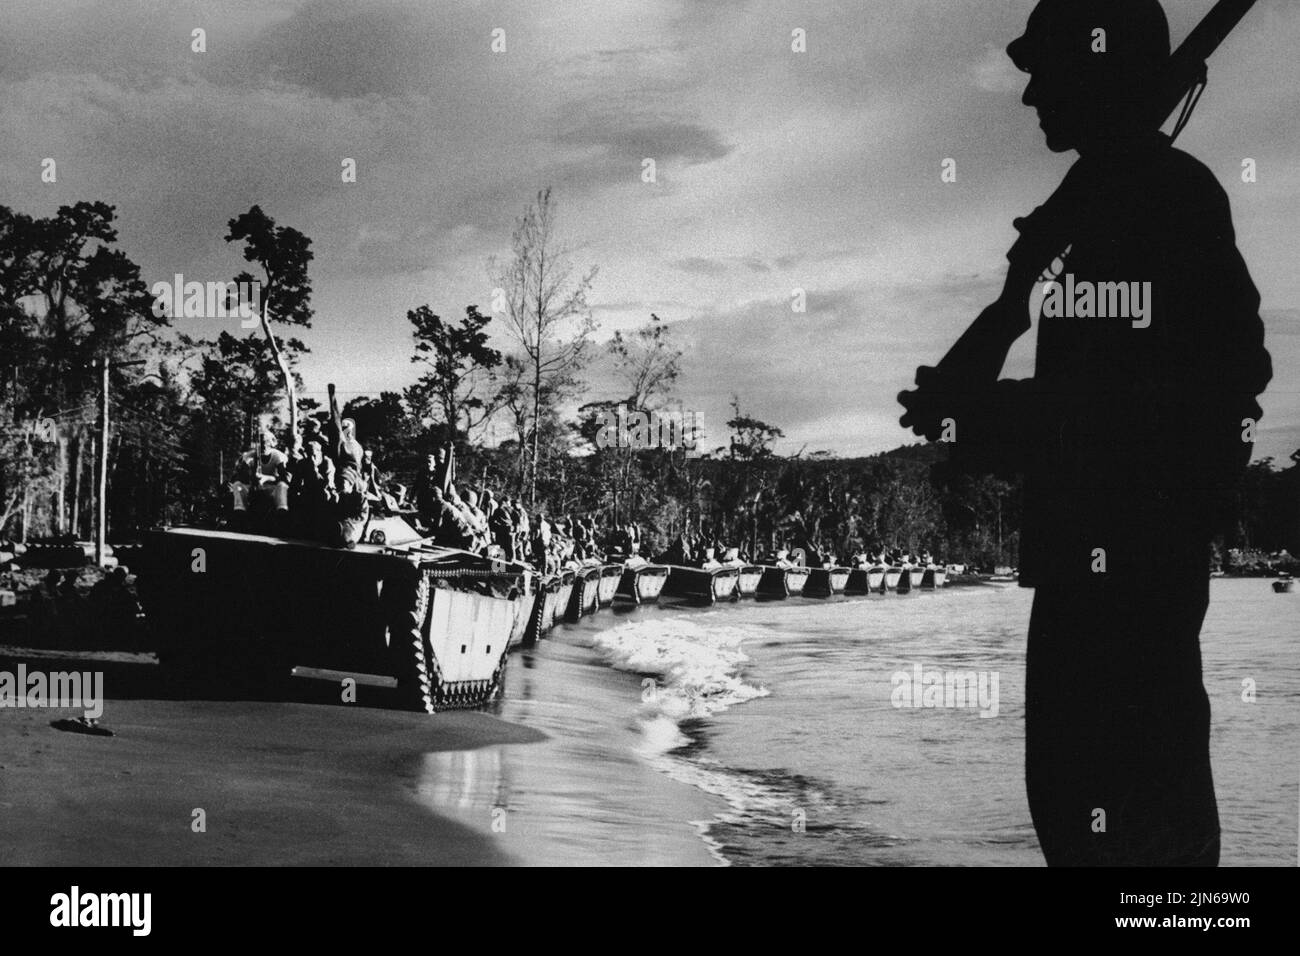 KAP SANAPOR, NEUGUINEA - 1944 - Wasserbüffel ( Amphibienpanzer ) stellen sich zur Invasion von Kap Sansapor am westlichen Ende von Niederländisch-Neuguinea auf. Zoll Stockfoto